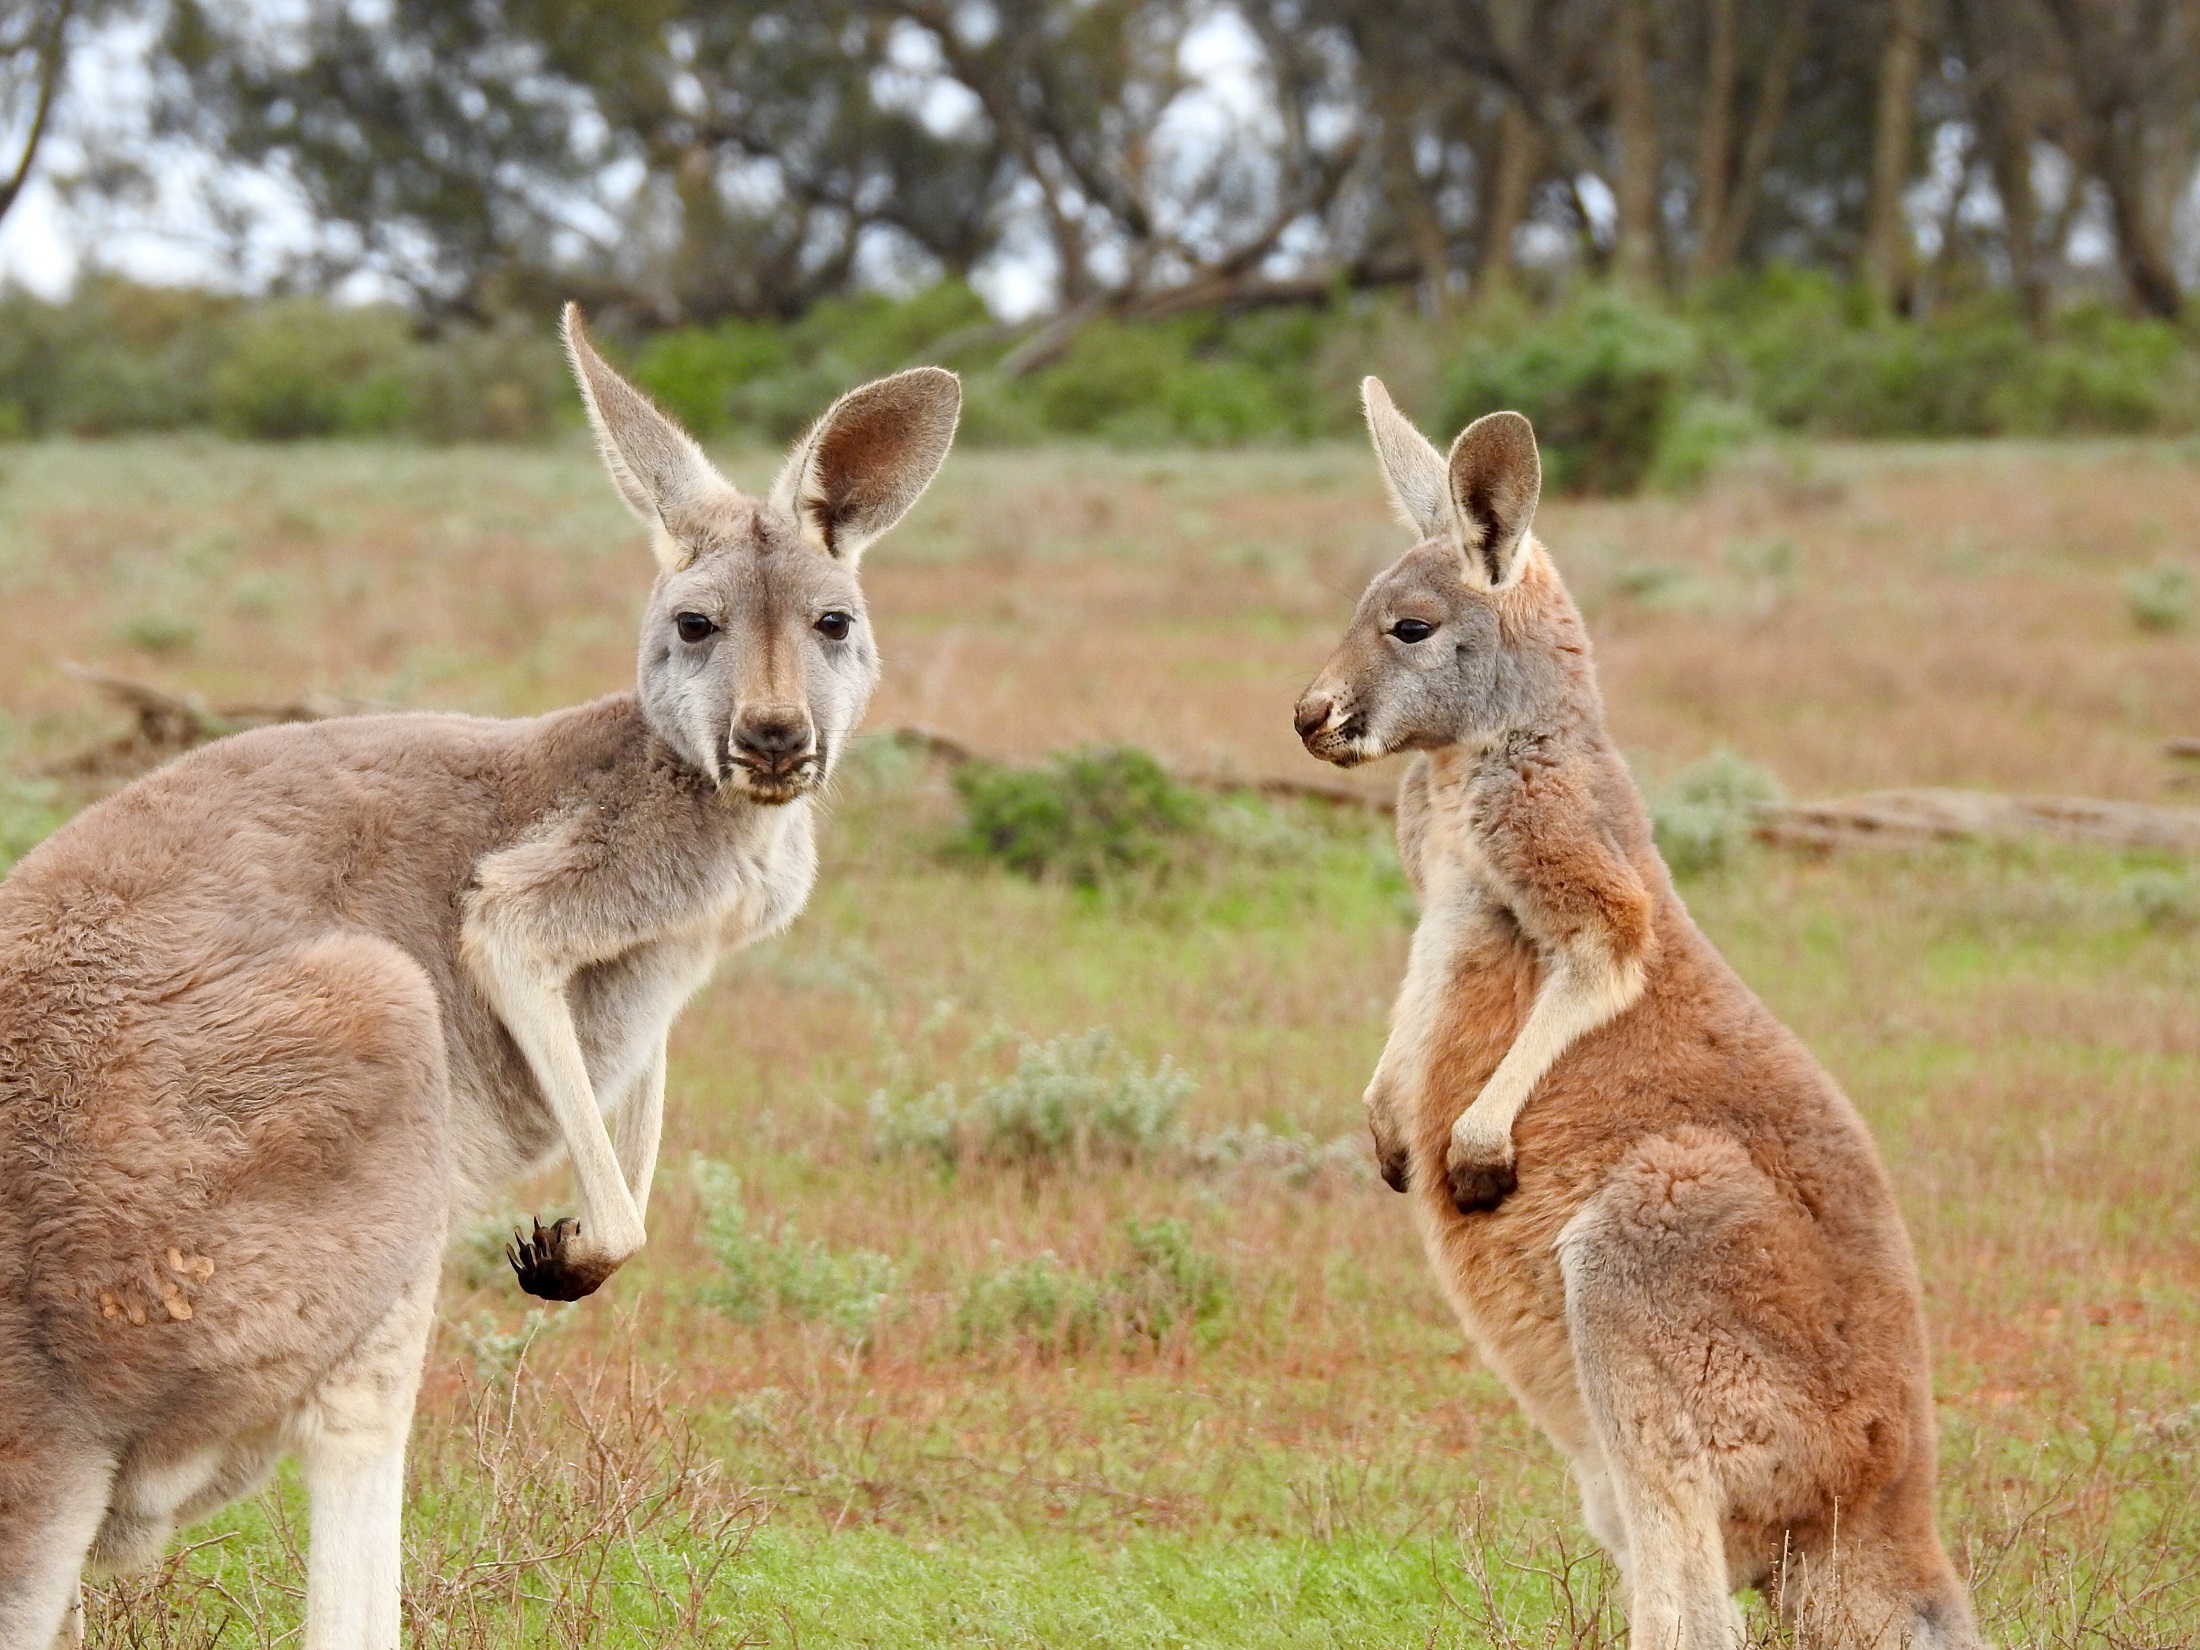 Bezdepozitni bonus forex kangaroo